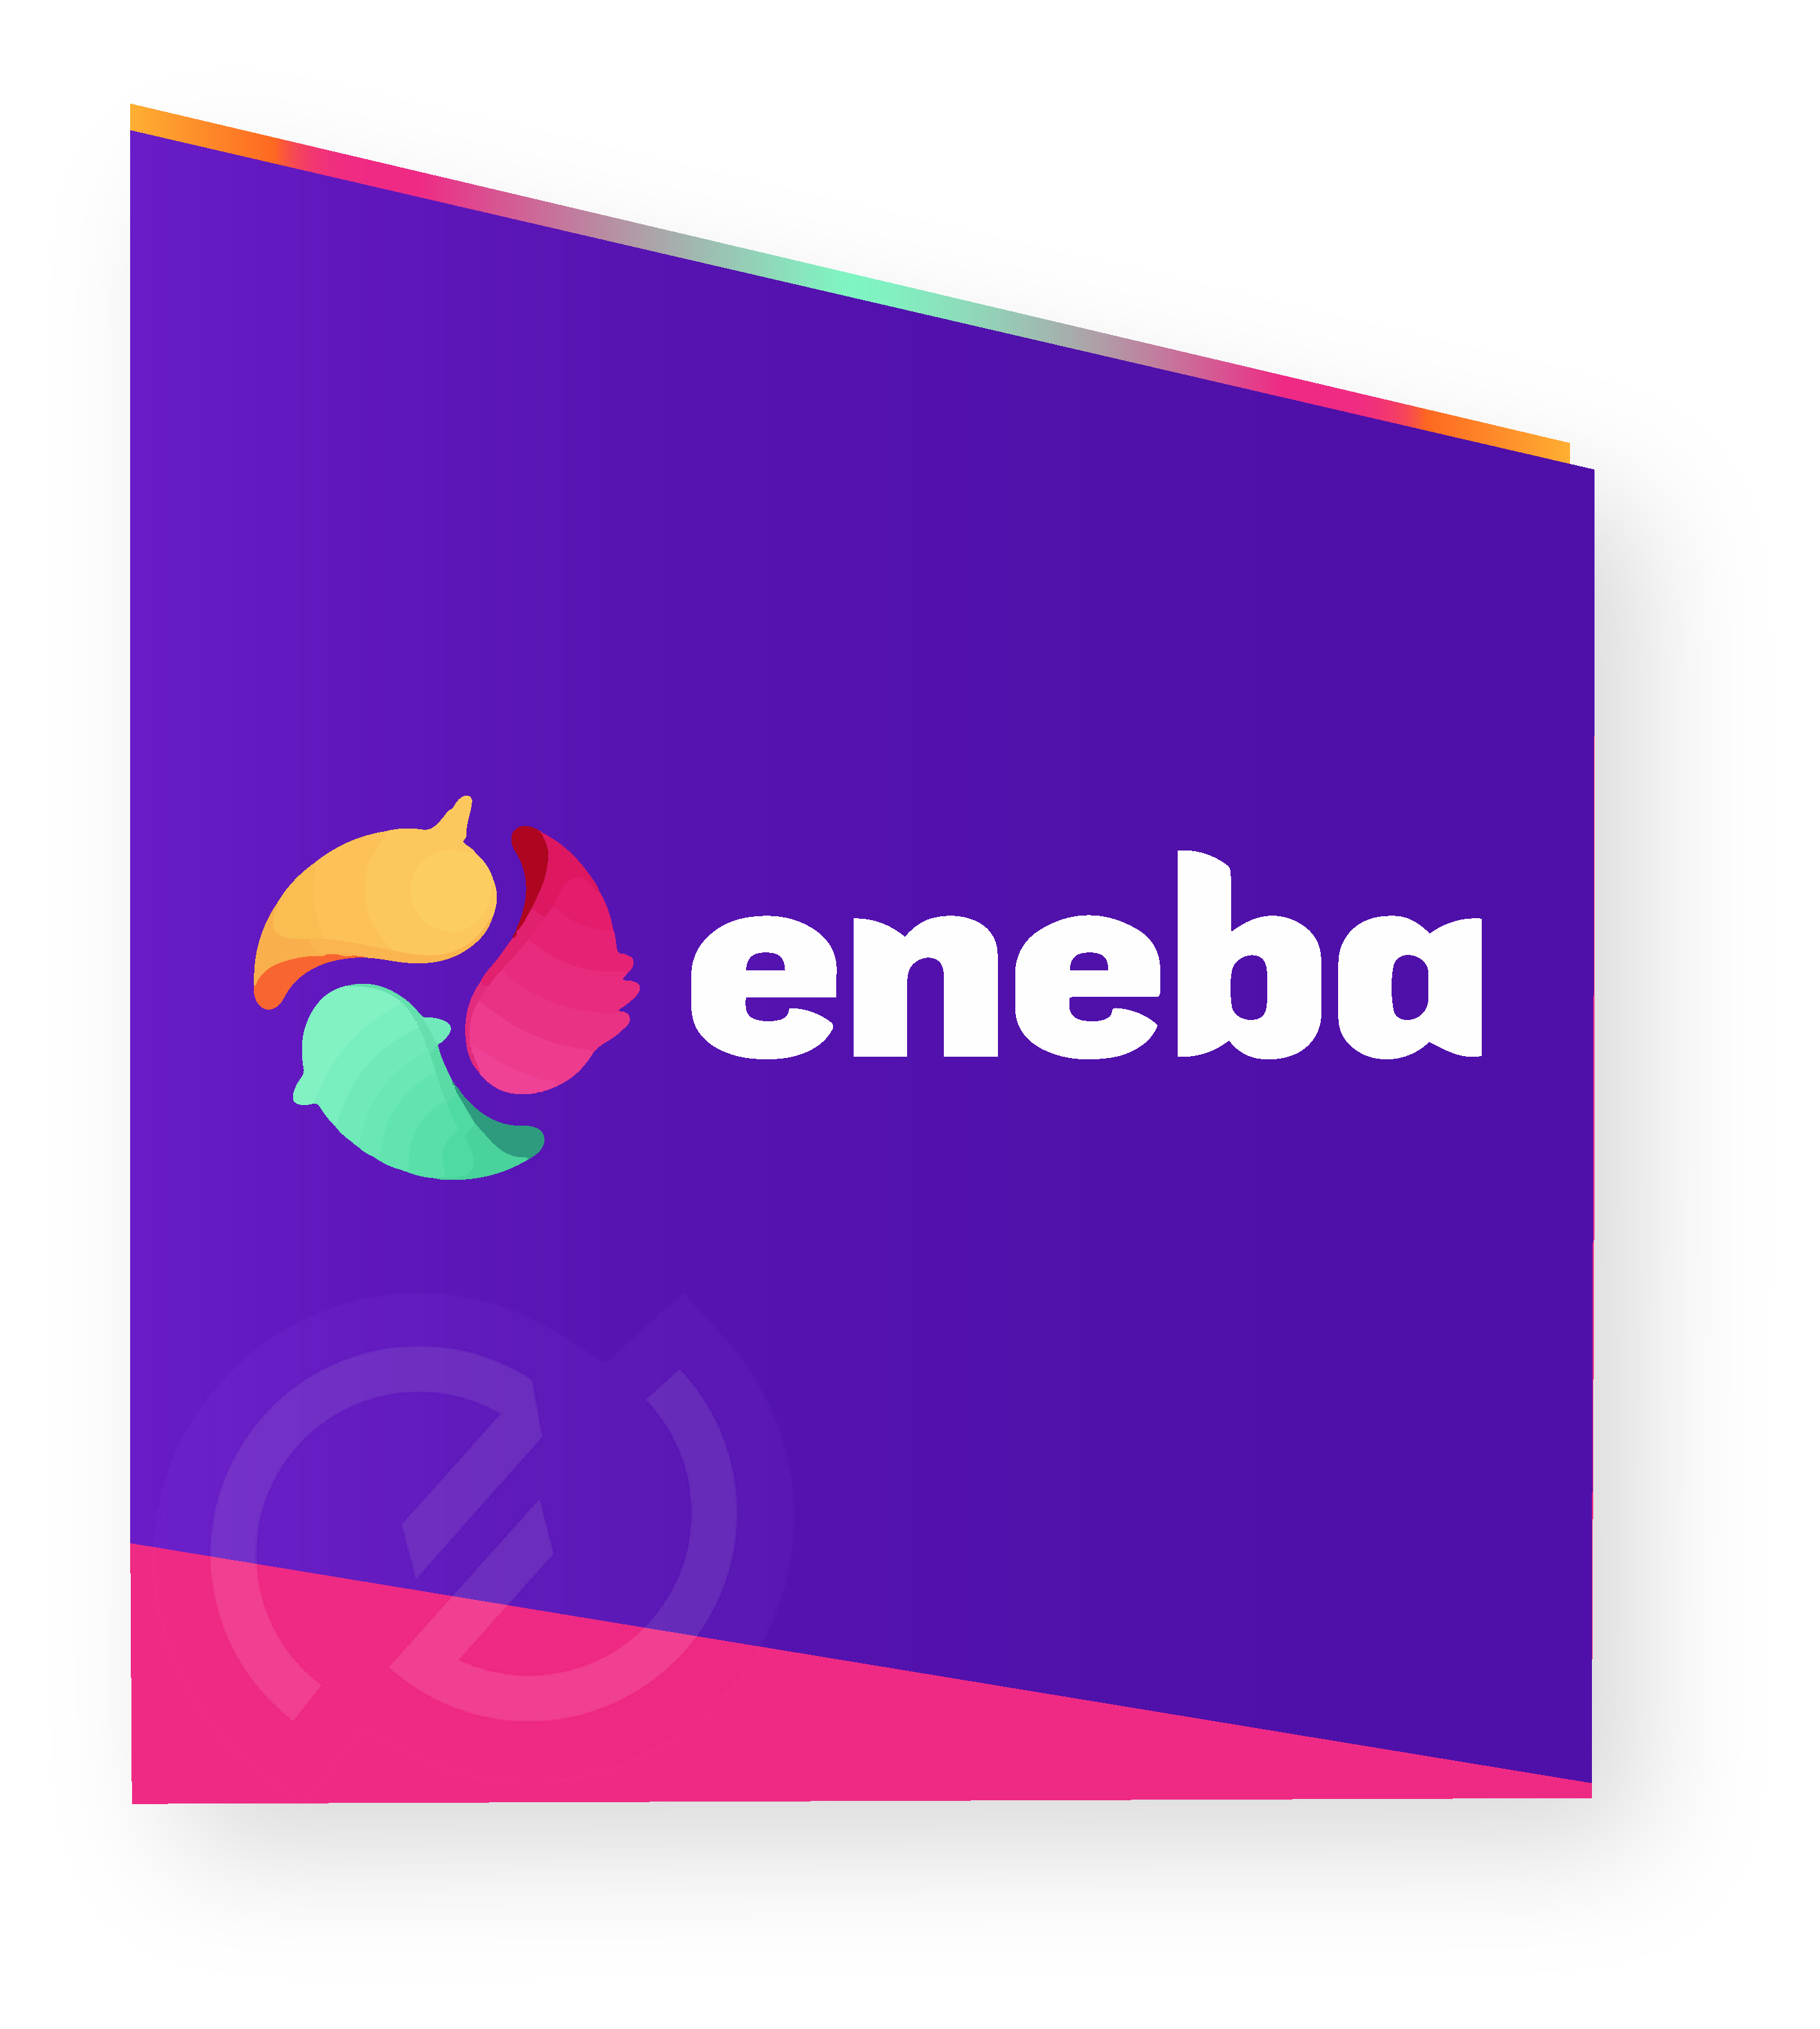 Image logo Eneba